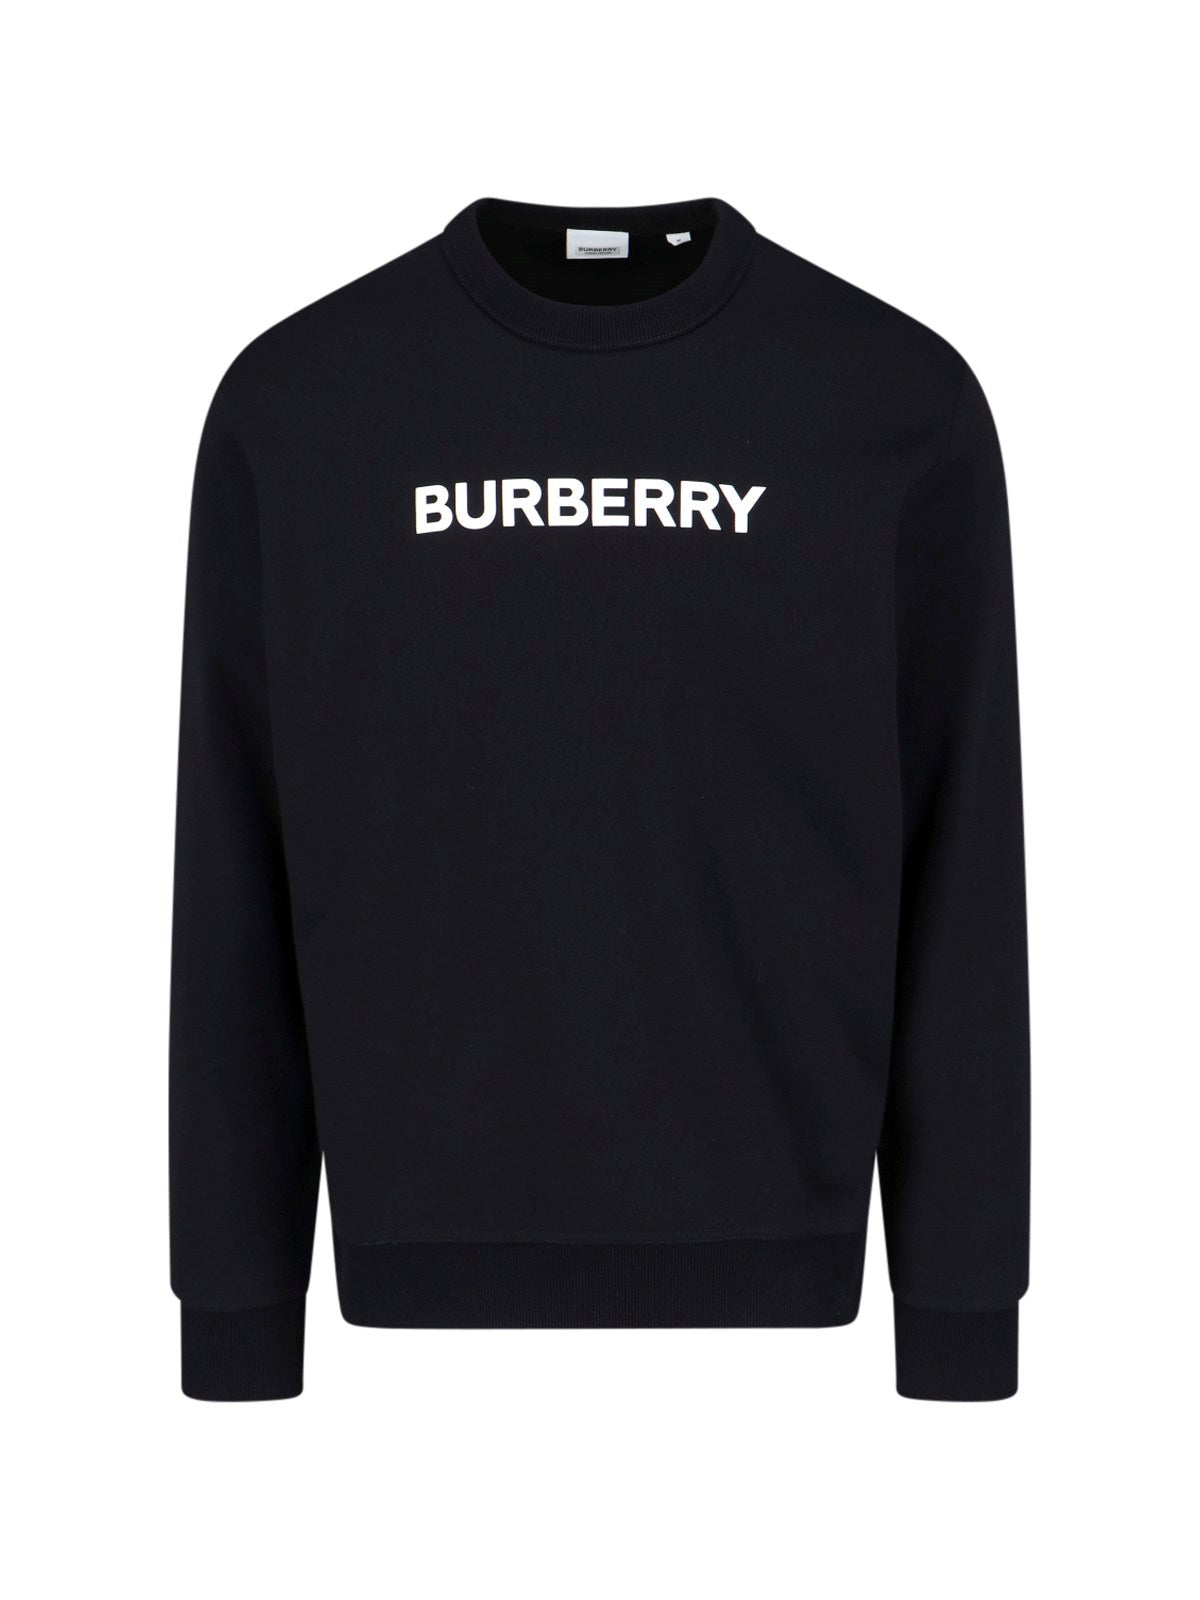 Burberry Felpa girocollo logo-felpe girocollo-Burberry-Felpa girocollo logo Burberry, in cotone nero, stampa logo bianco fronte, finiture a costine, orlo dritto.-Dresso